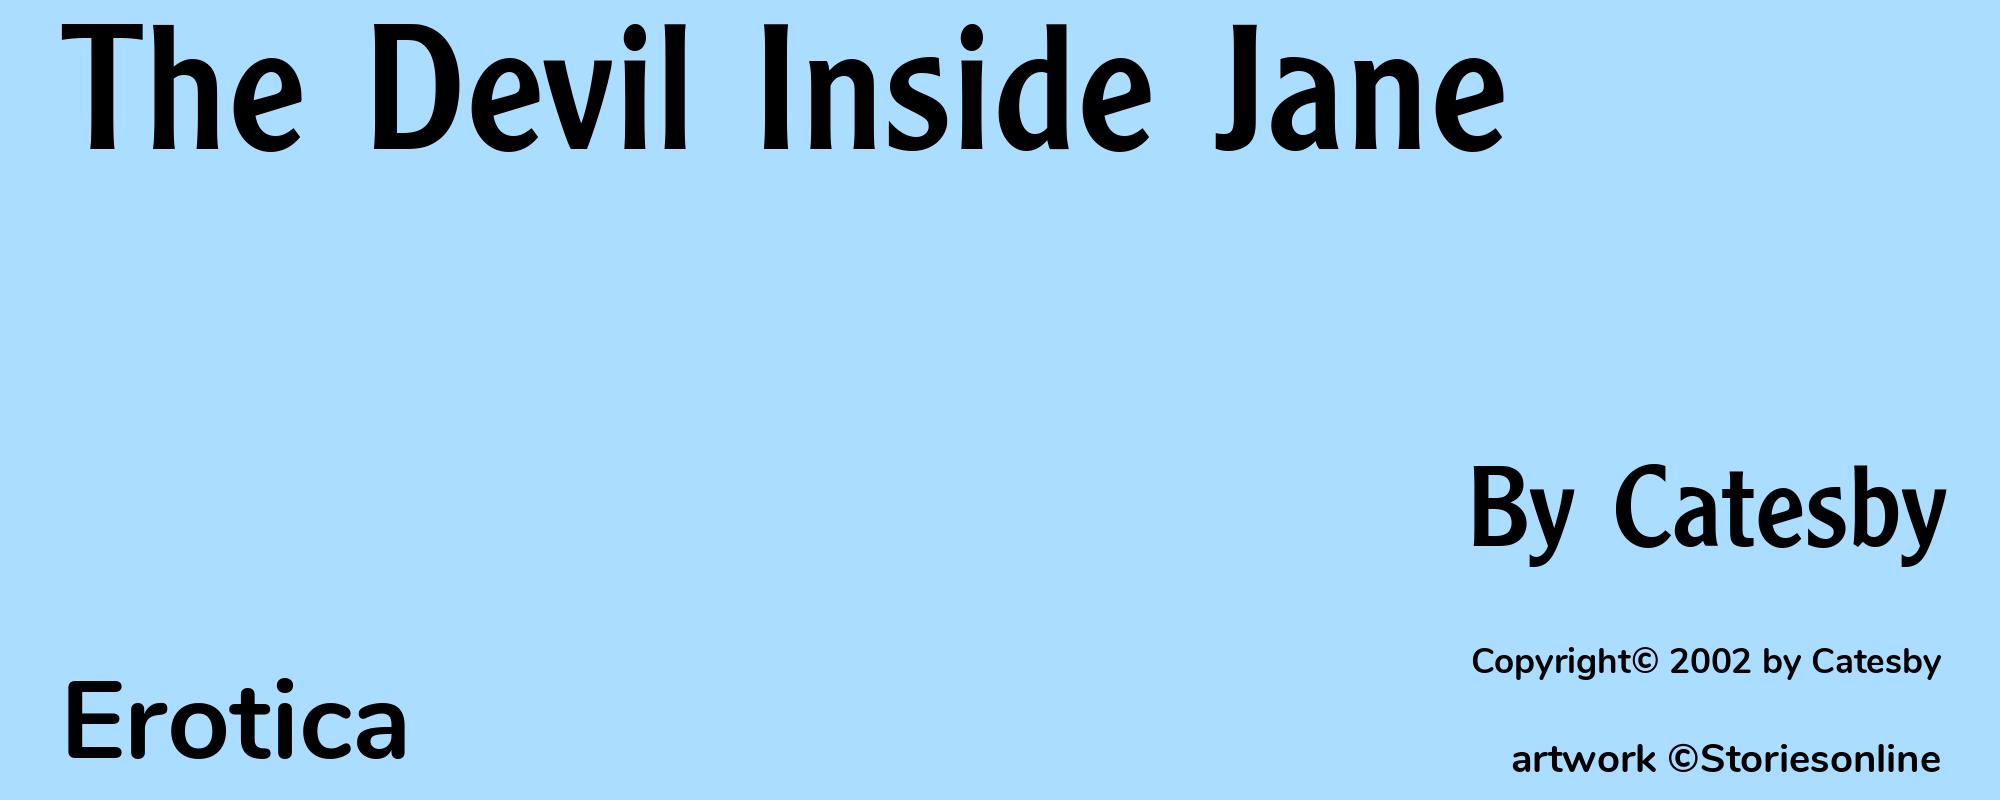 The Devil Inside Jane - Cover